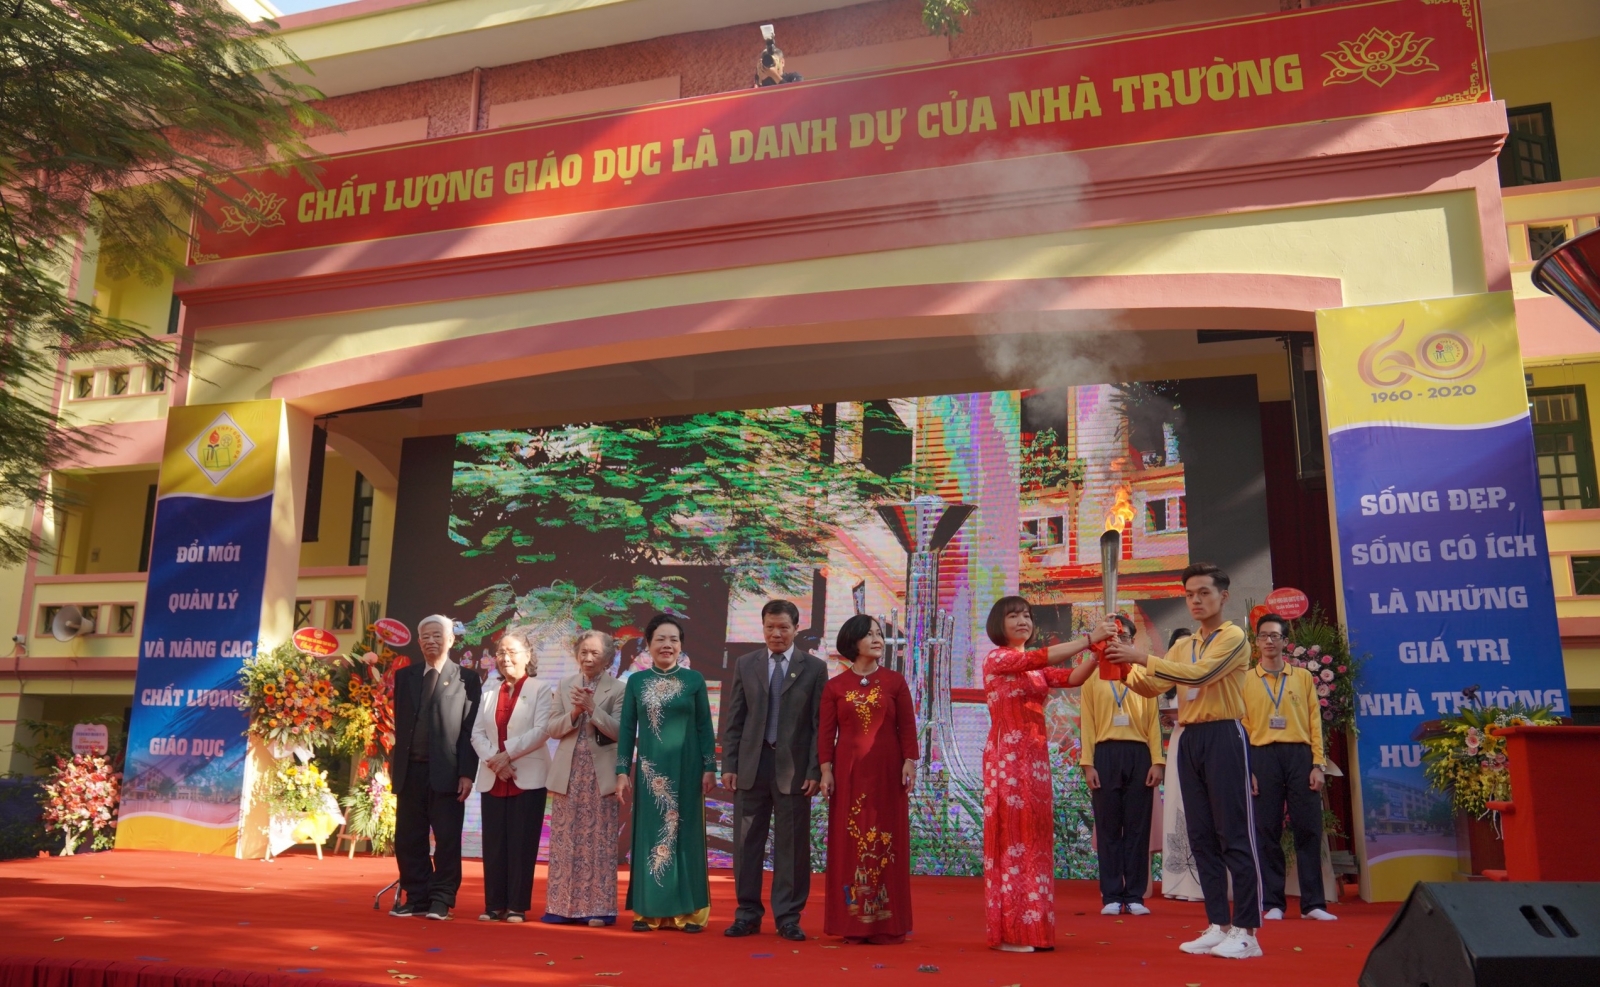 Hà Nội: Trường THPT Đống Đa kỷ niệm 60 năm thành lập - Ảnh minh hoạ 2